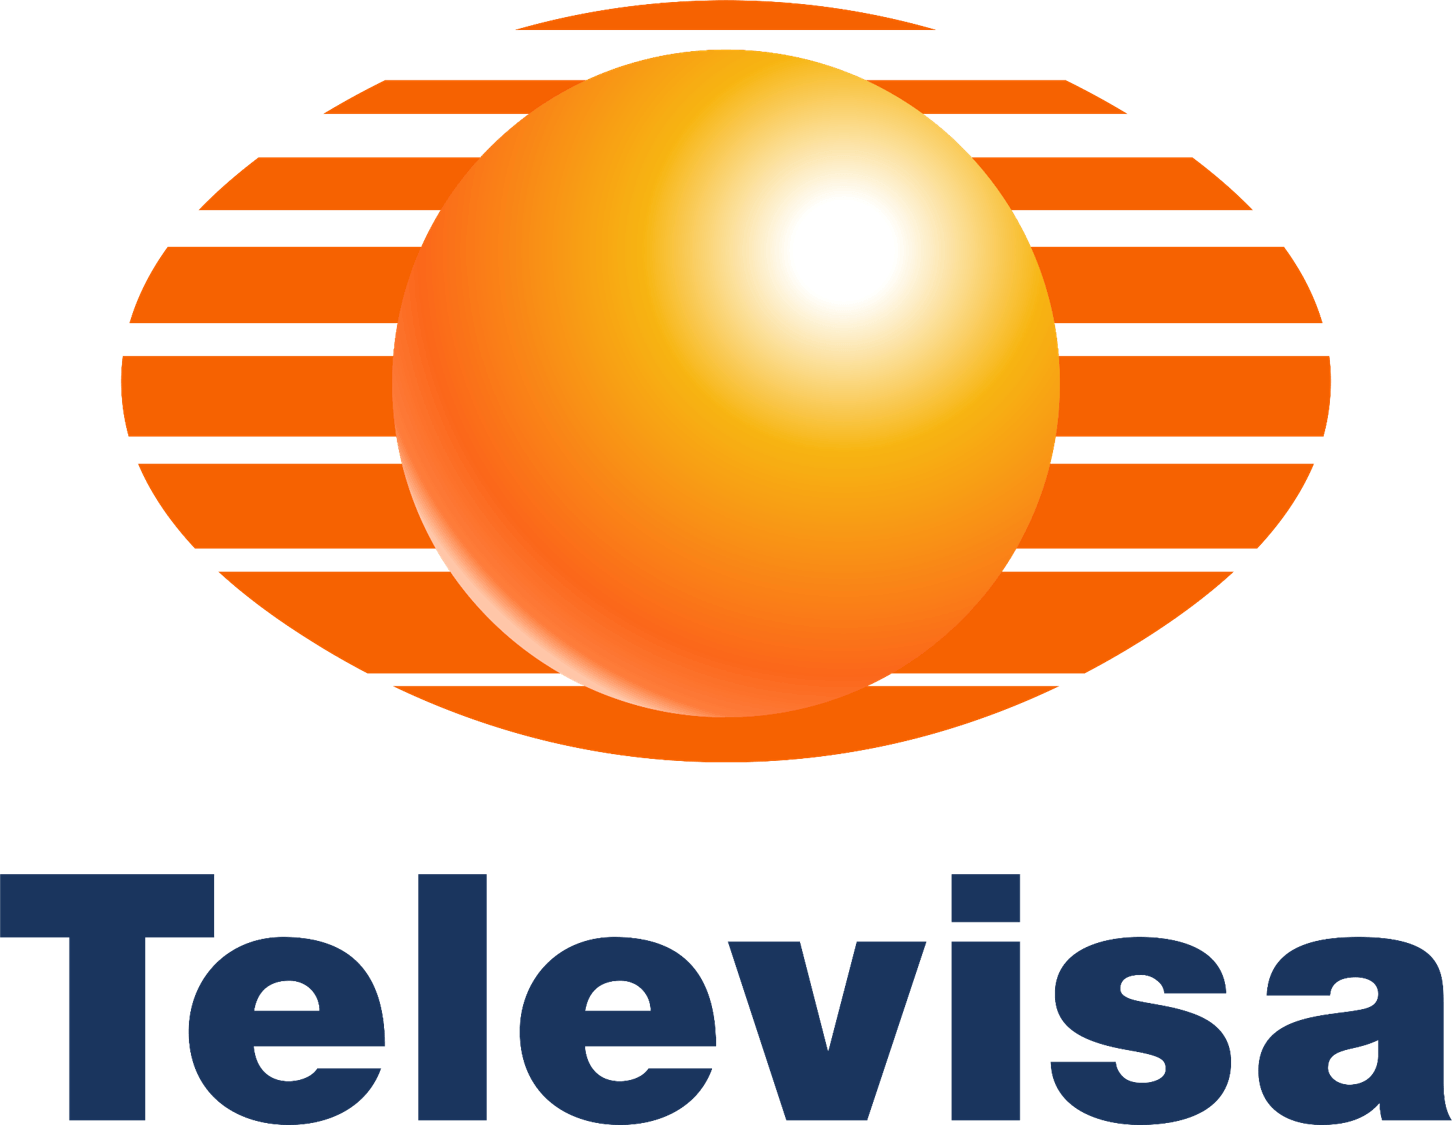 Televisa Logo - Televisa | Logopedia | FANDOM powered by Wikia